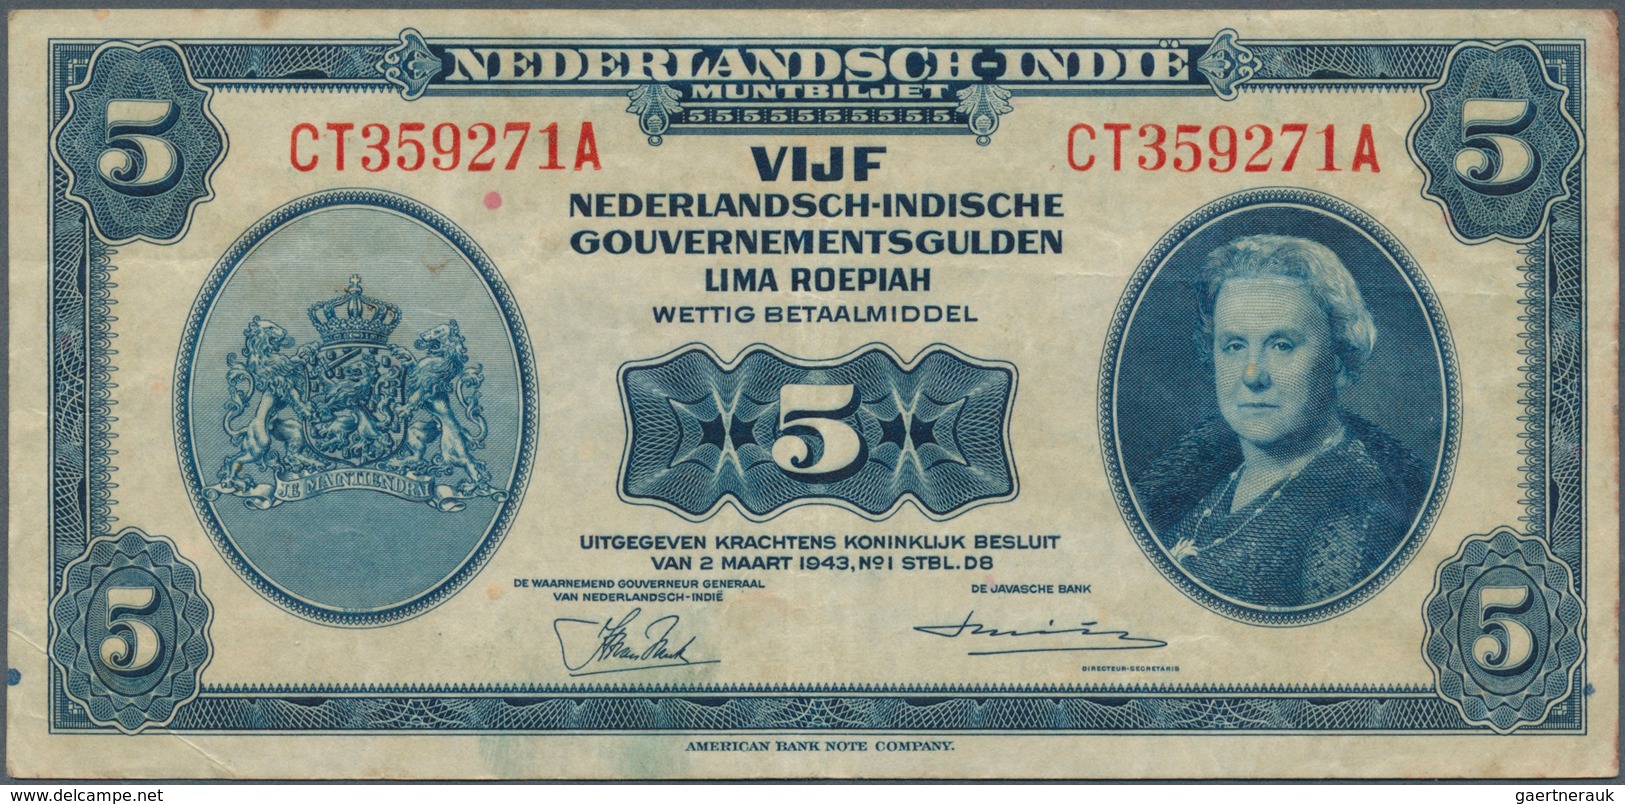 02055 Netherlands Indies / Niederländisch Indien: Set with 10 Banknotes containing 4 x 5 Gulden, 3 x 10 an